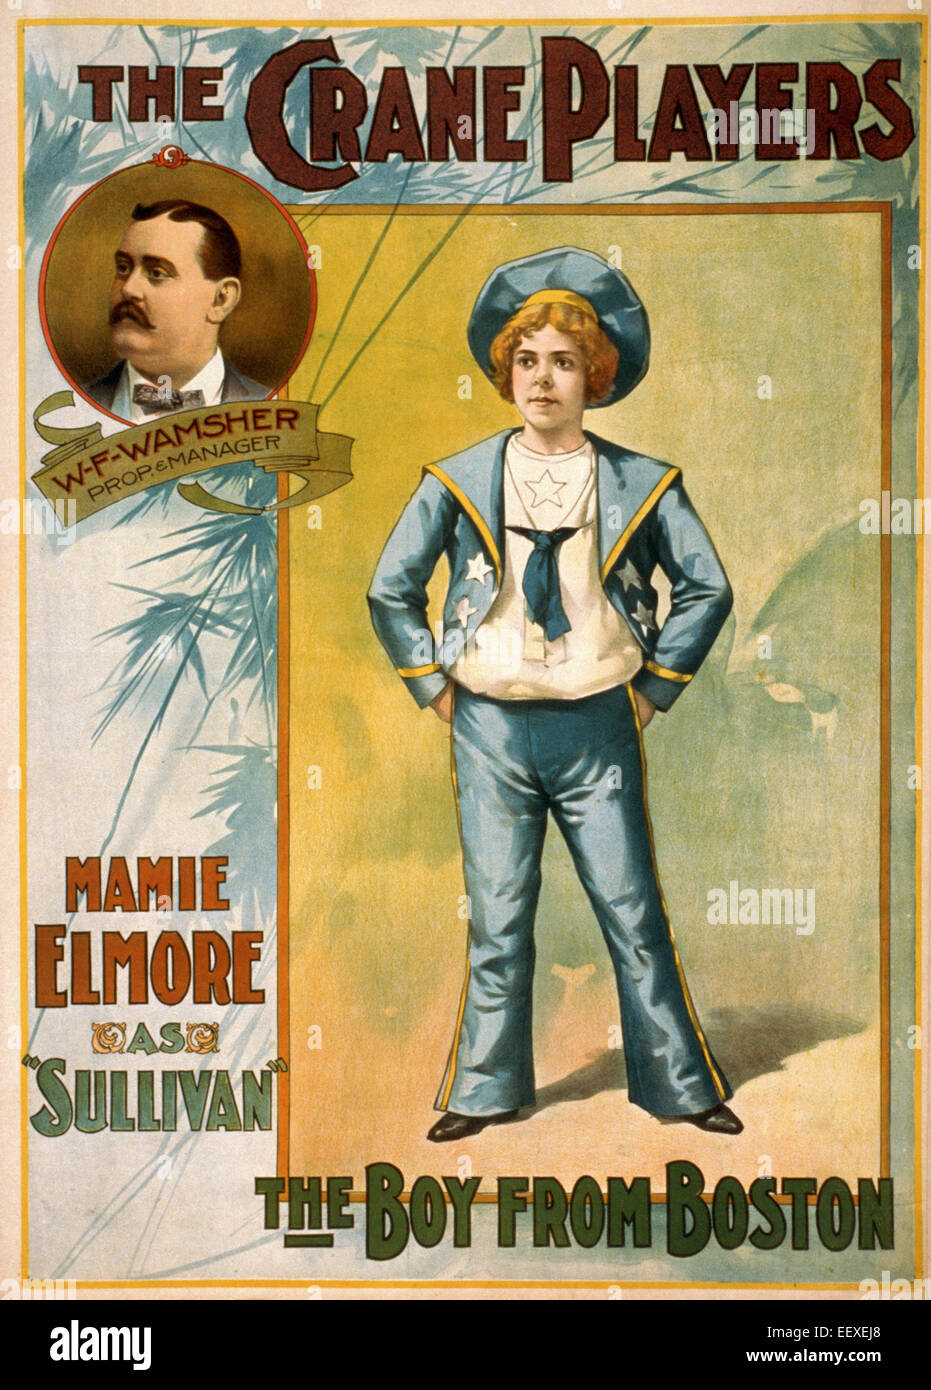 La Gru giocatori, il ragazzo da Boston, poster pubblicitario, circa 1899 Foto Stock